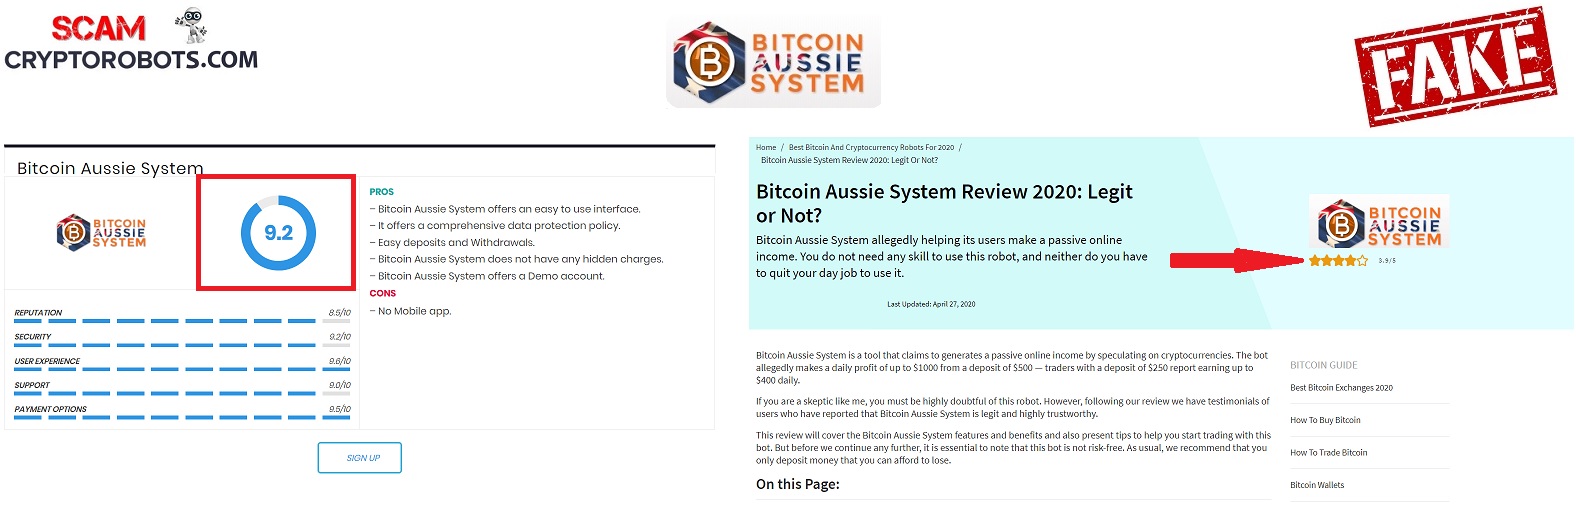 forumul sistemului bitcoin aussie